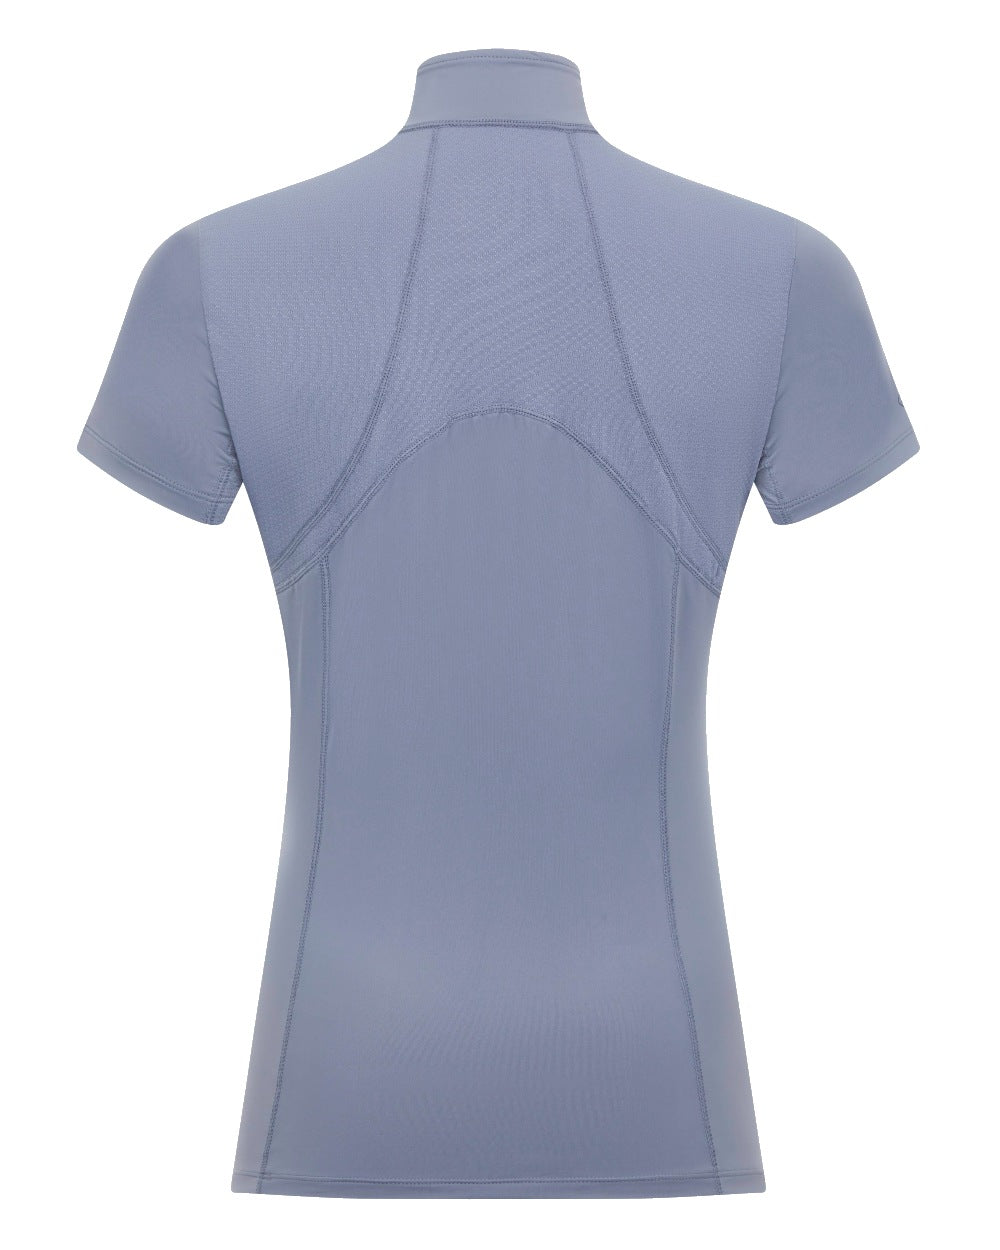 Jay Blue coloured LeMieux Mia Mesh Short Sleeve Base Layer on white background 